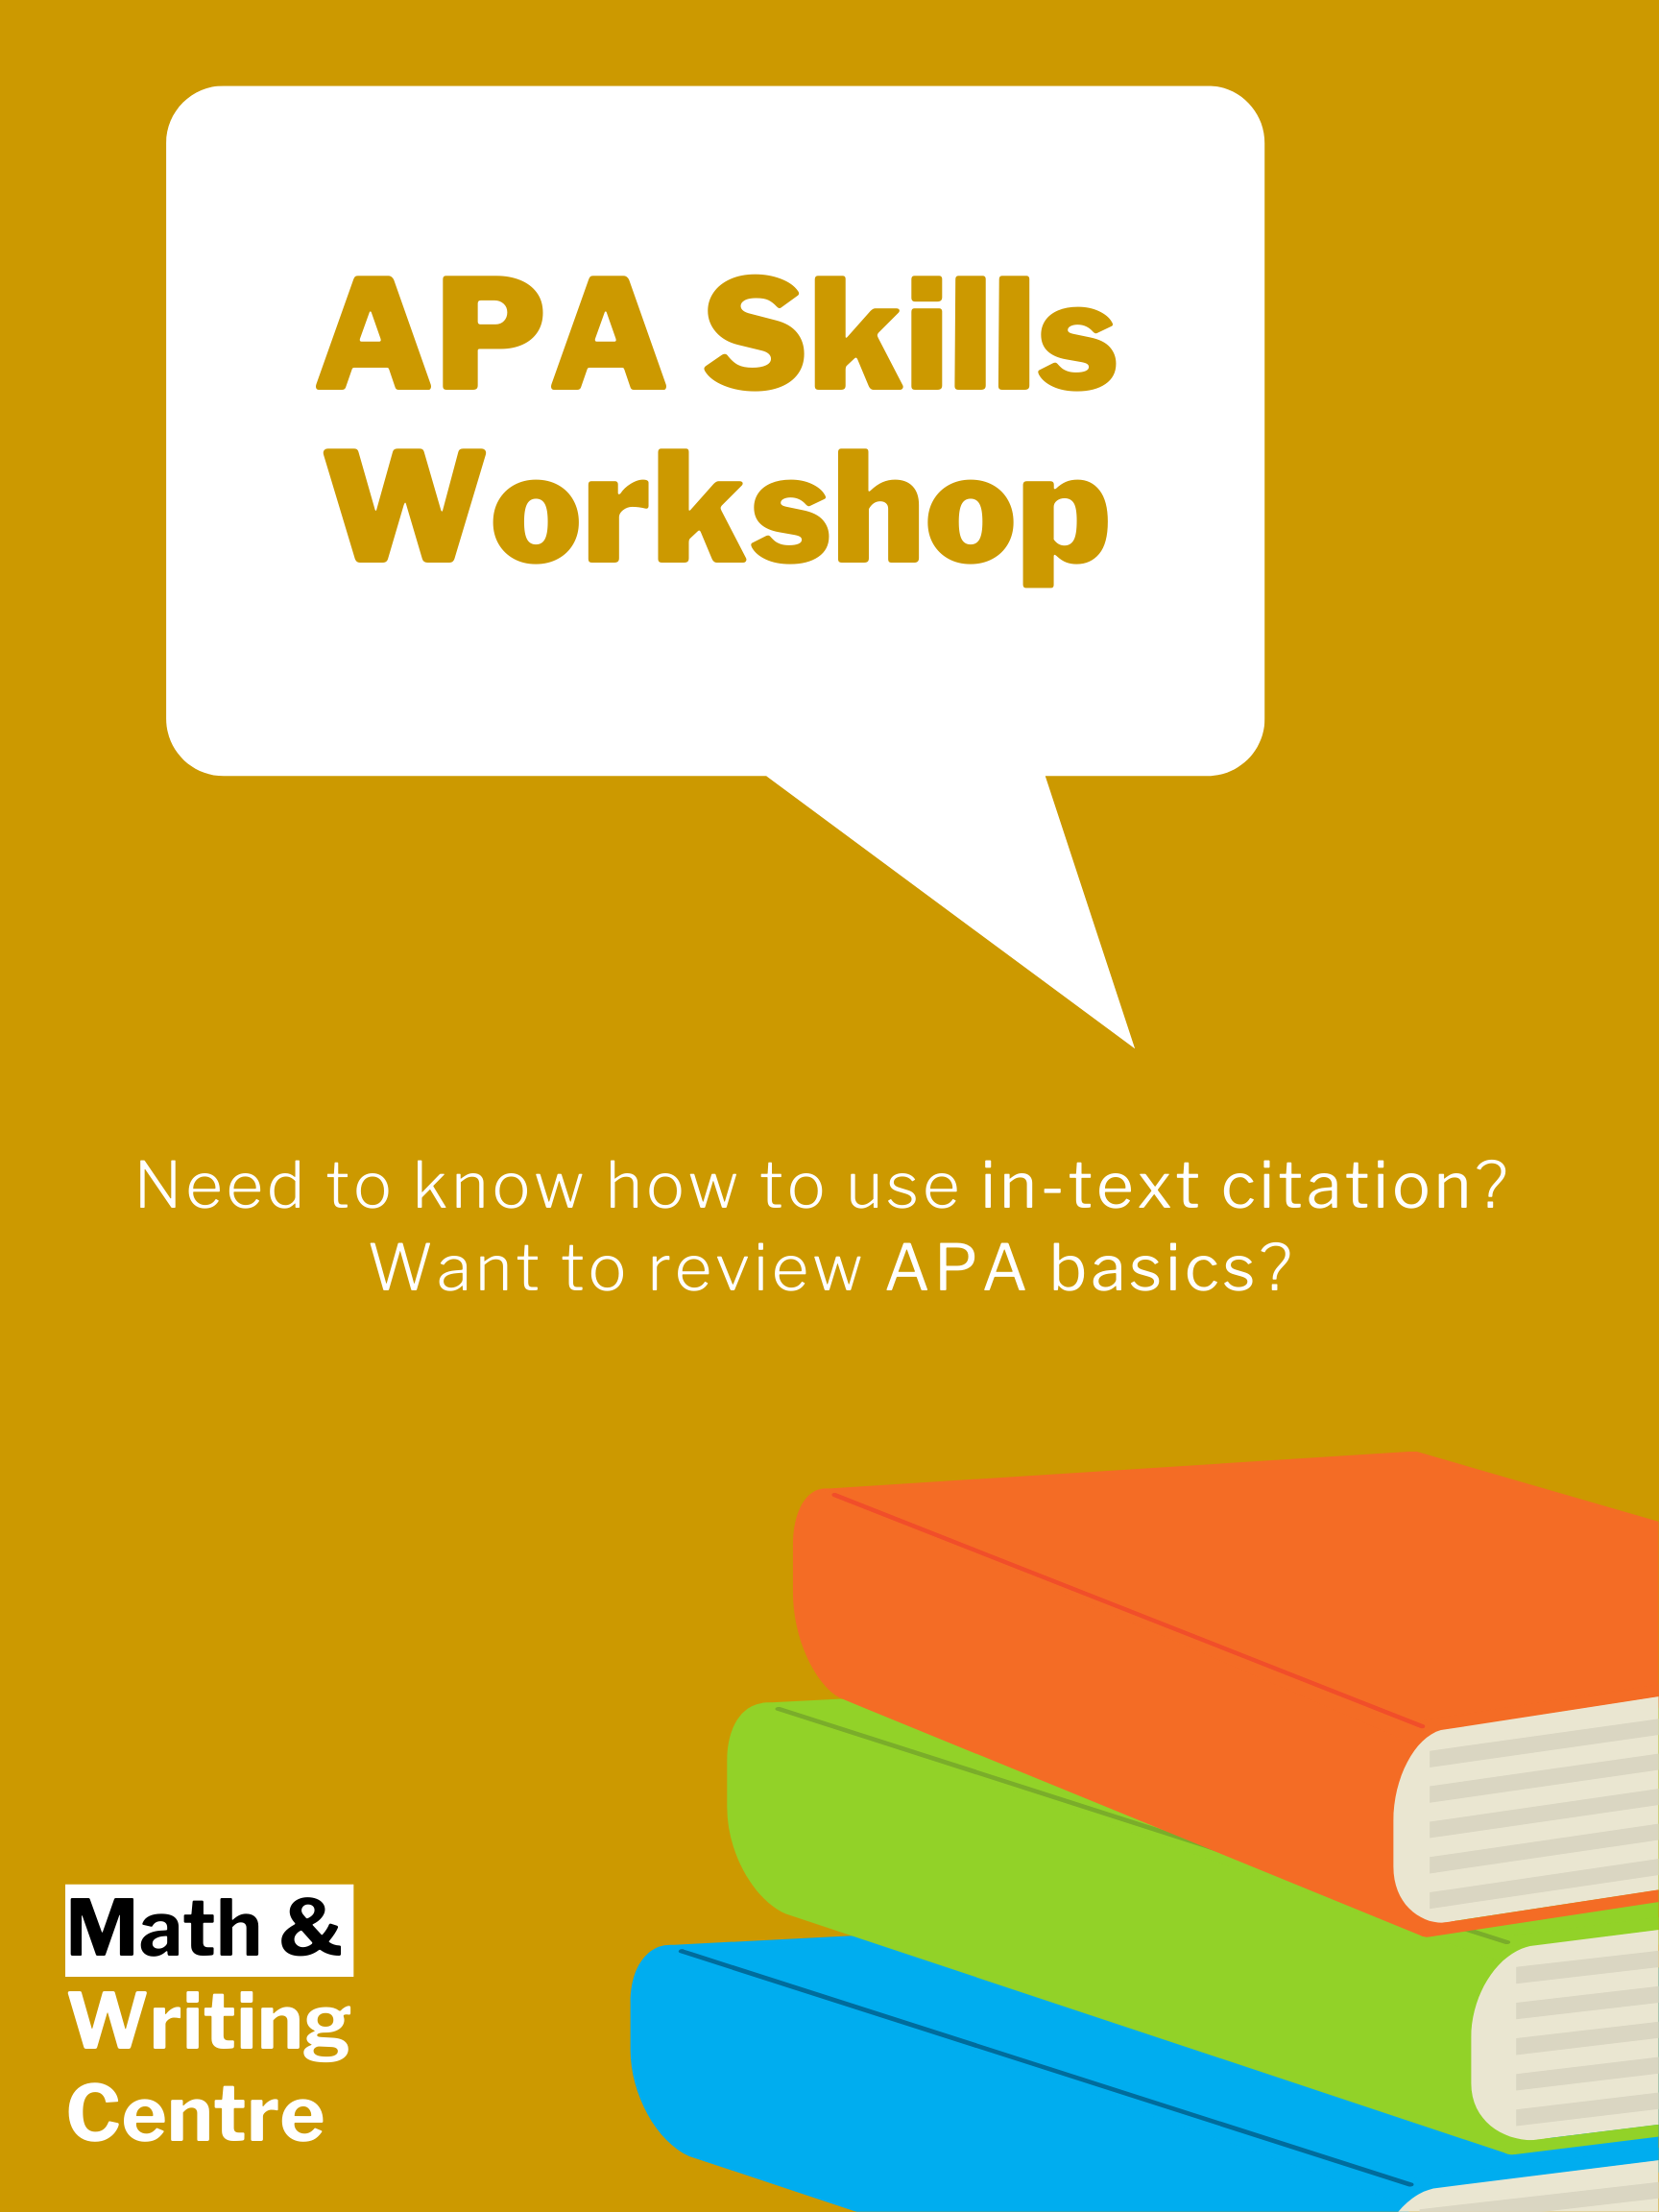 "APA Skills Workshop" in a speech bubble